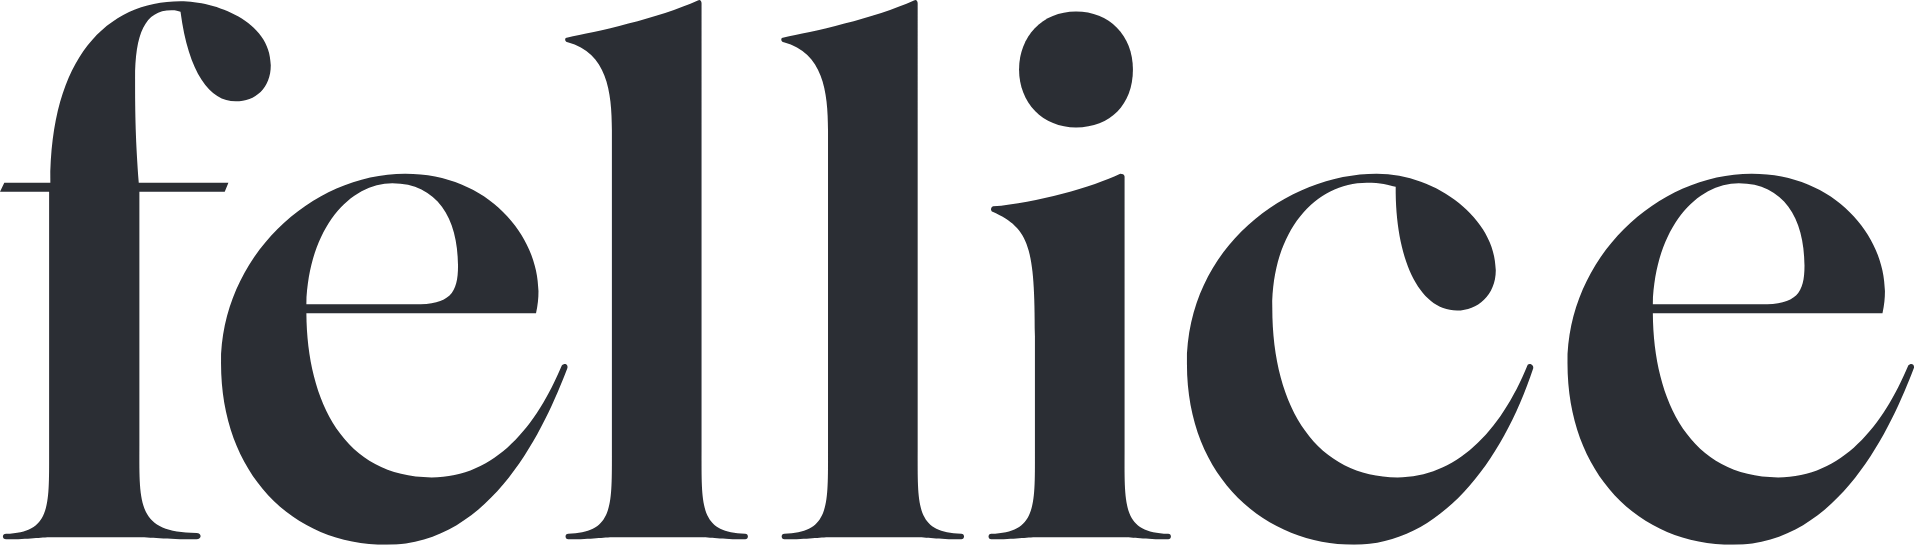 fellice-logotype